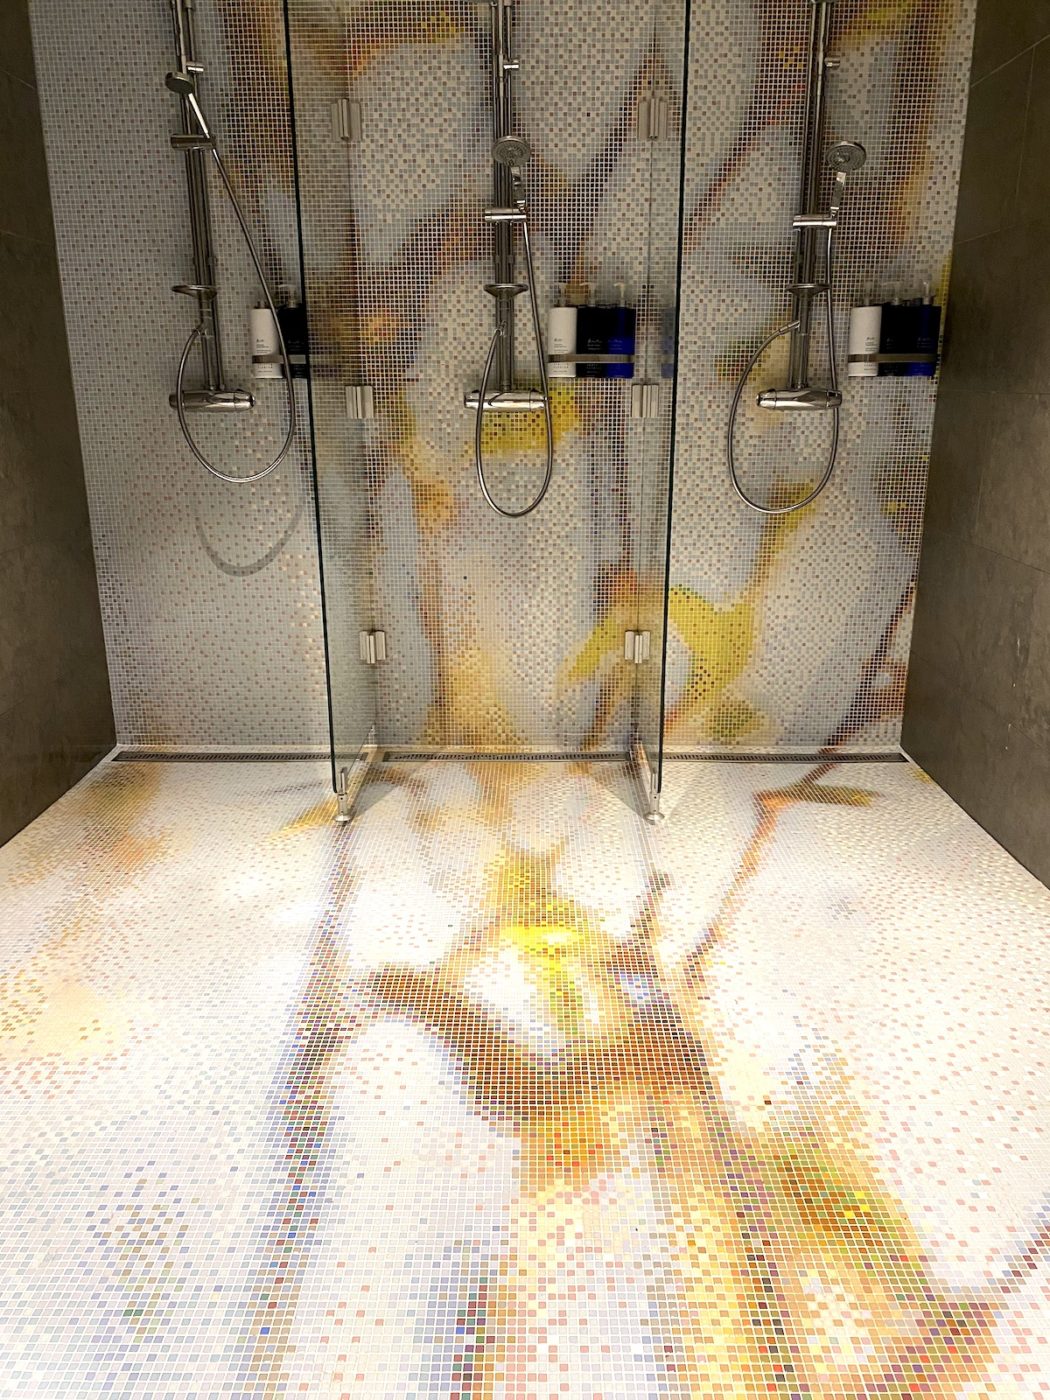 Tre duschar i spaavdelningen på Marholmen. Det är jättefint mosaikkakel som ser ut som ett naket träd i sol. 